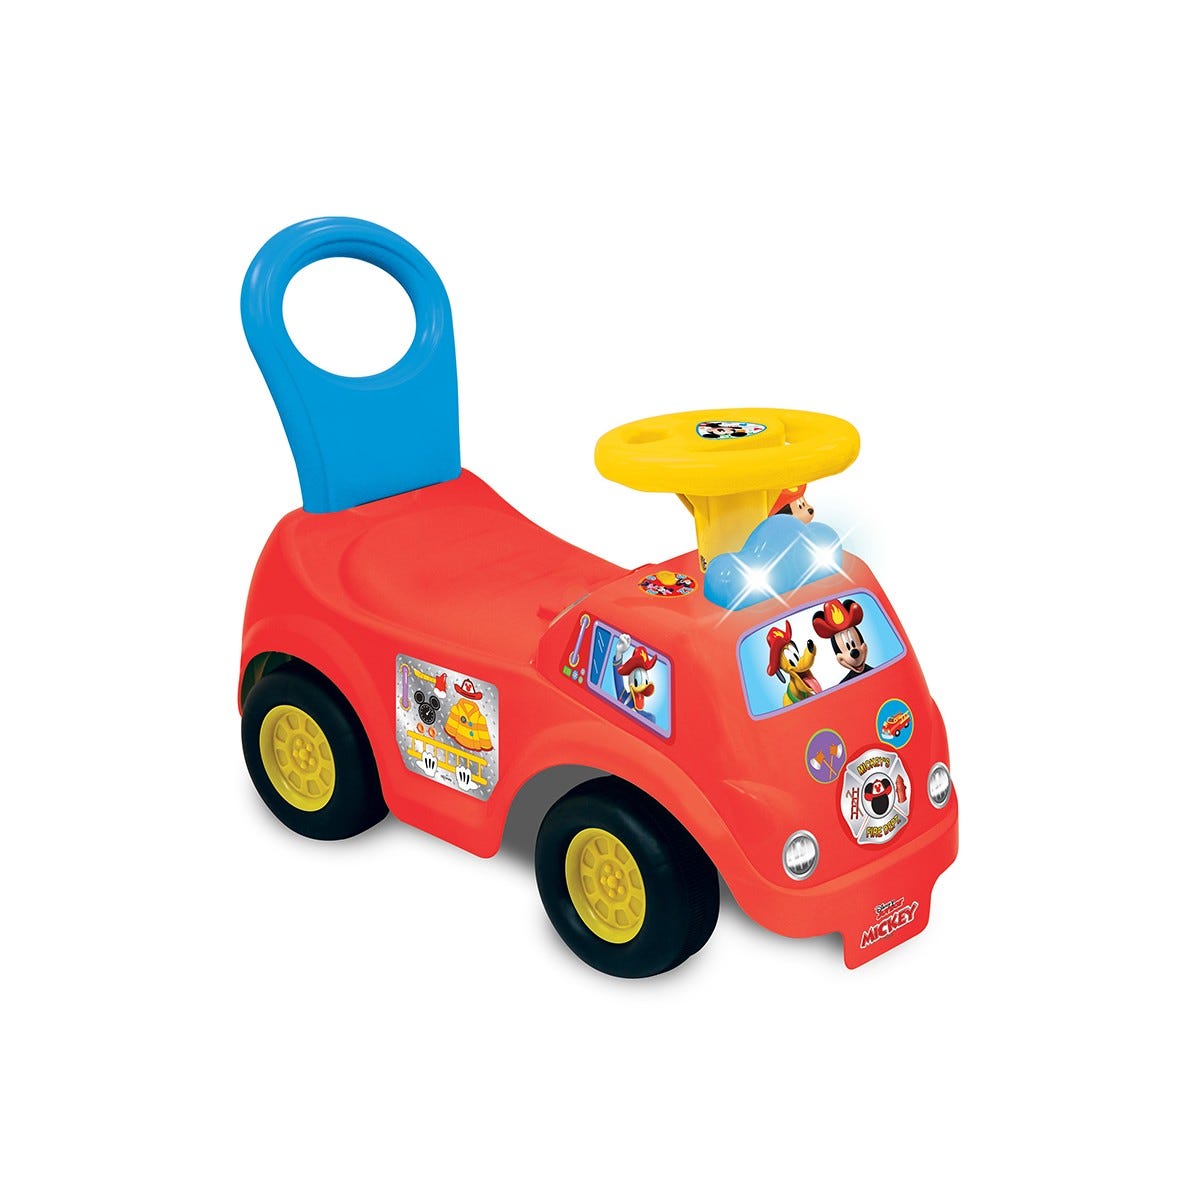 Macchine giocattolo elettriche e veicoli a pedali per bambini 